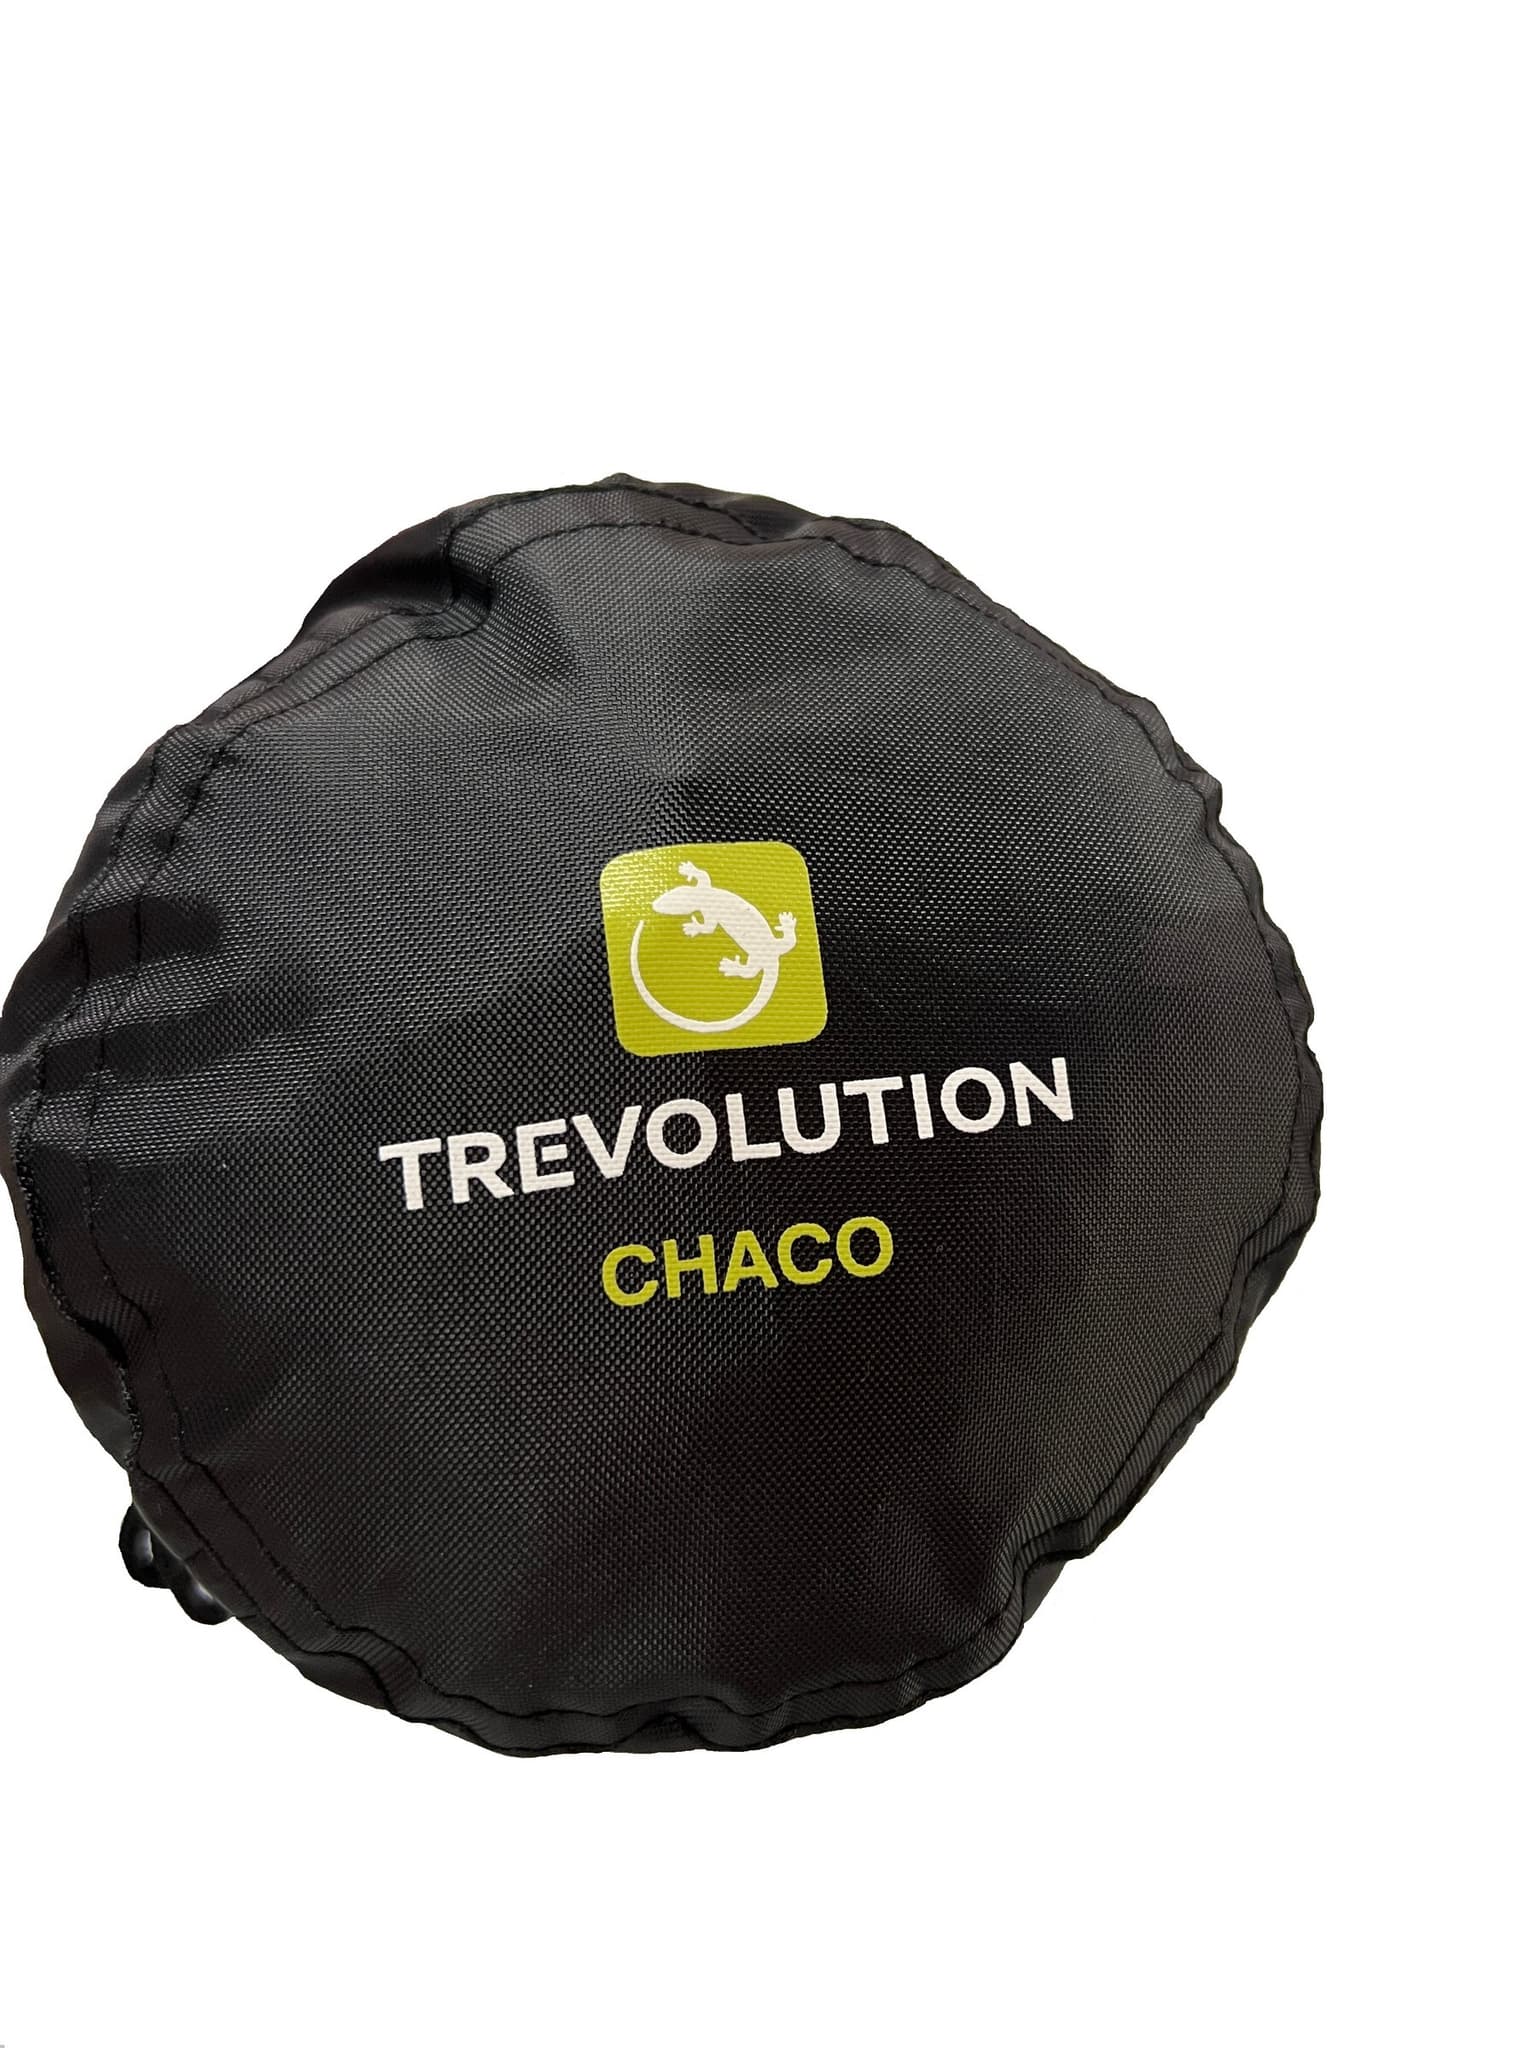 Trevolution Trevolution Chaco Kunstfaserschlafsack limegruen 7